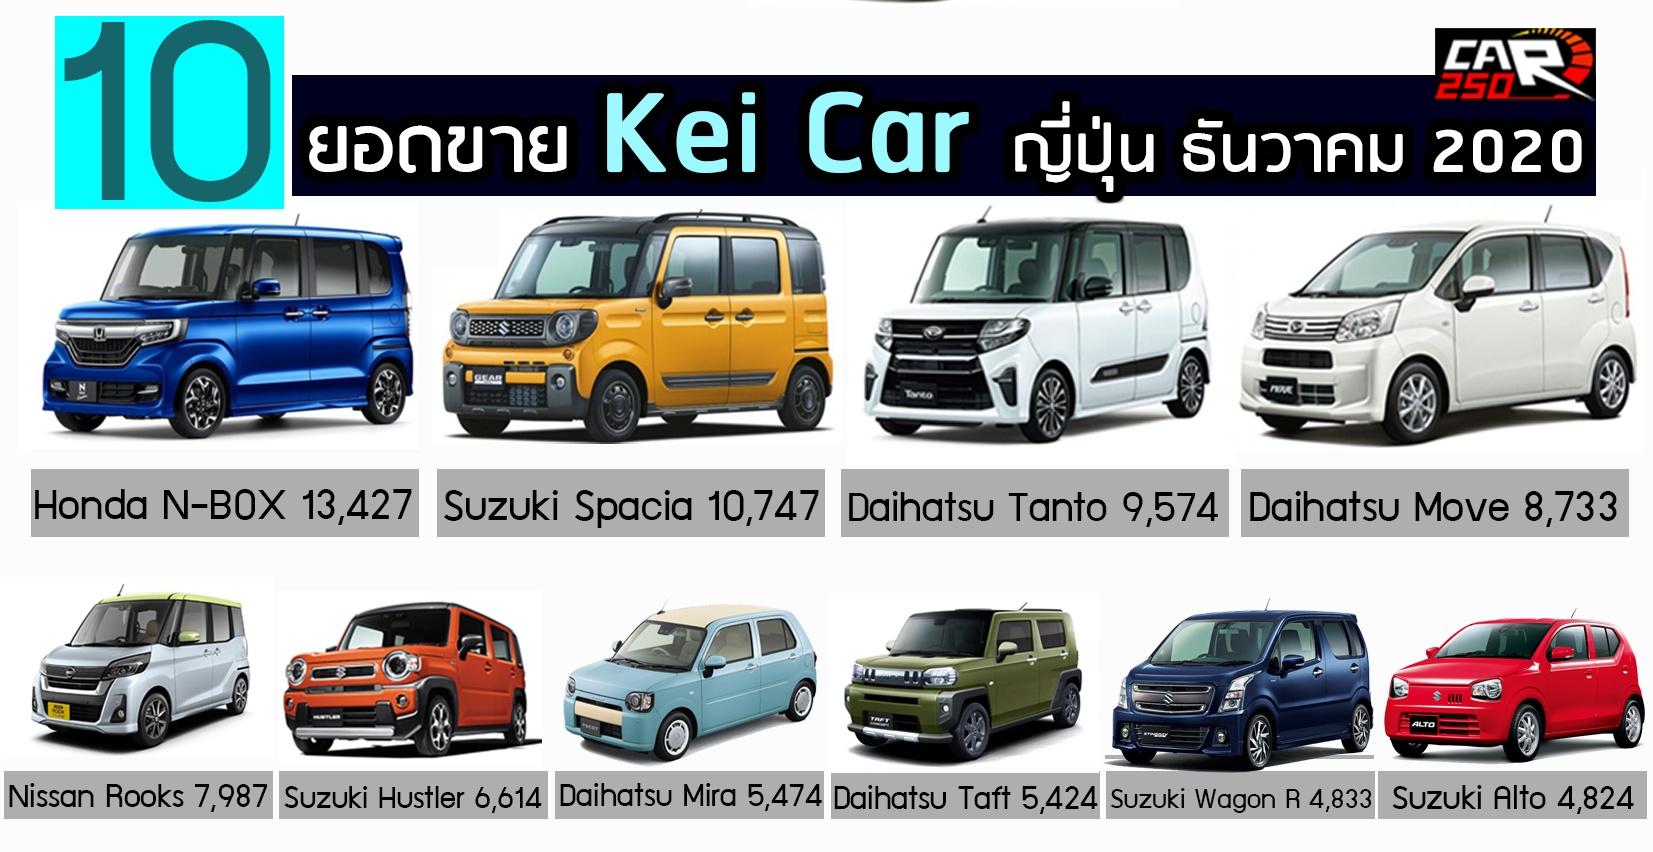 10 Kei Car ขายดี ธันวาคม 2020 ในญี่ปุ่น